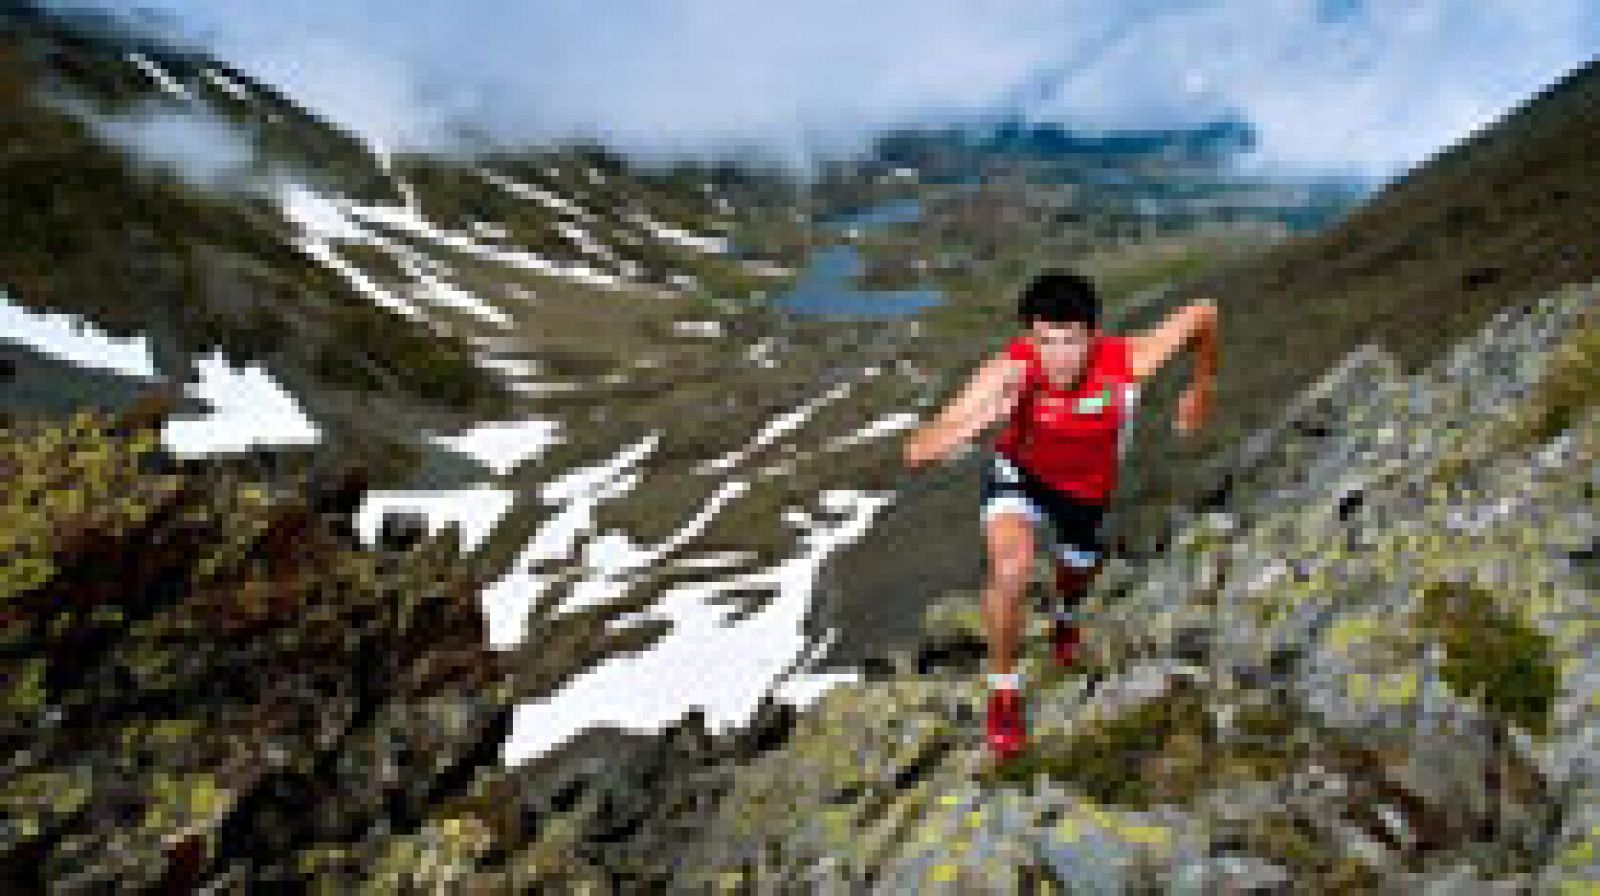 El corredor de montaña español Kilian Jornet estableció un nuevo récord de velocidad de subidad y bajada al Aconcagua, de 6.962 metros de altura, al marcar un tiempo de 12 horas y 49 minutos y después de un intento fallido el pasado viernes, cuando se vio obligado a dar media vuelta cerca de los 6.500 metros debido al mal tiempo, con ráfagas de viento de más de 90km/h.